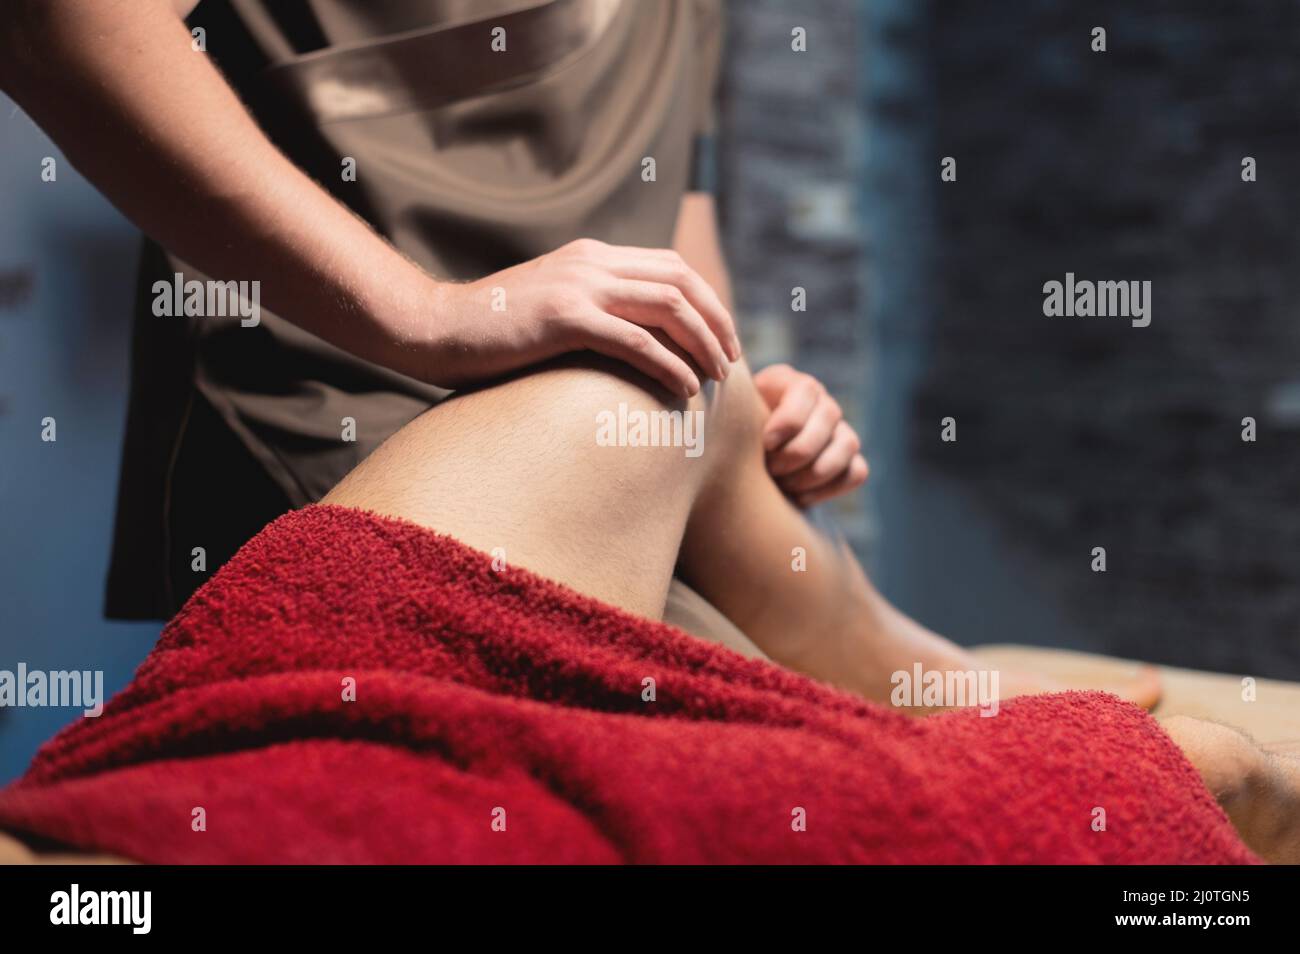 Professionelle männliche Sportmassage der Hüfte und des Knies in einem dunklen Massageraum. Premium-Massagen. Speicherplatz kopieren Stockfoto